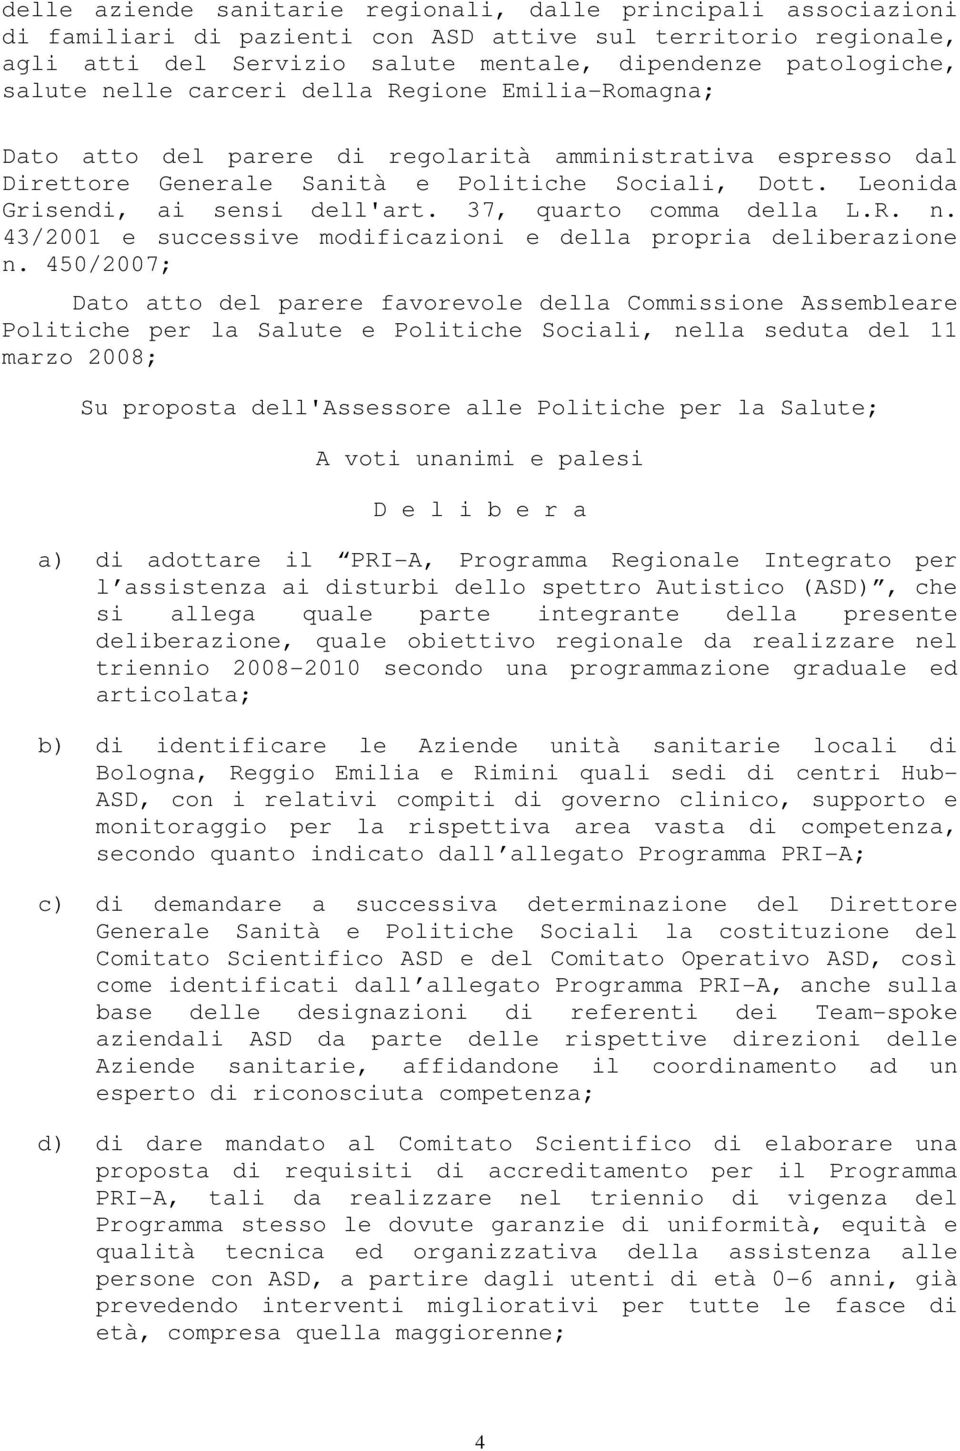 Leonida Grisendi, ai sensi dell'art. 37, quarto comma della L.R. n. 43/2001 e successive modificazioni e della propria deliberazione n.